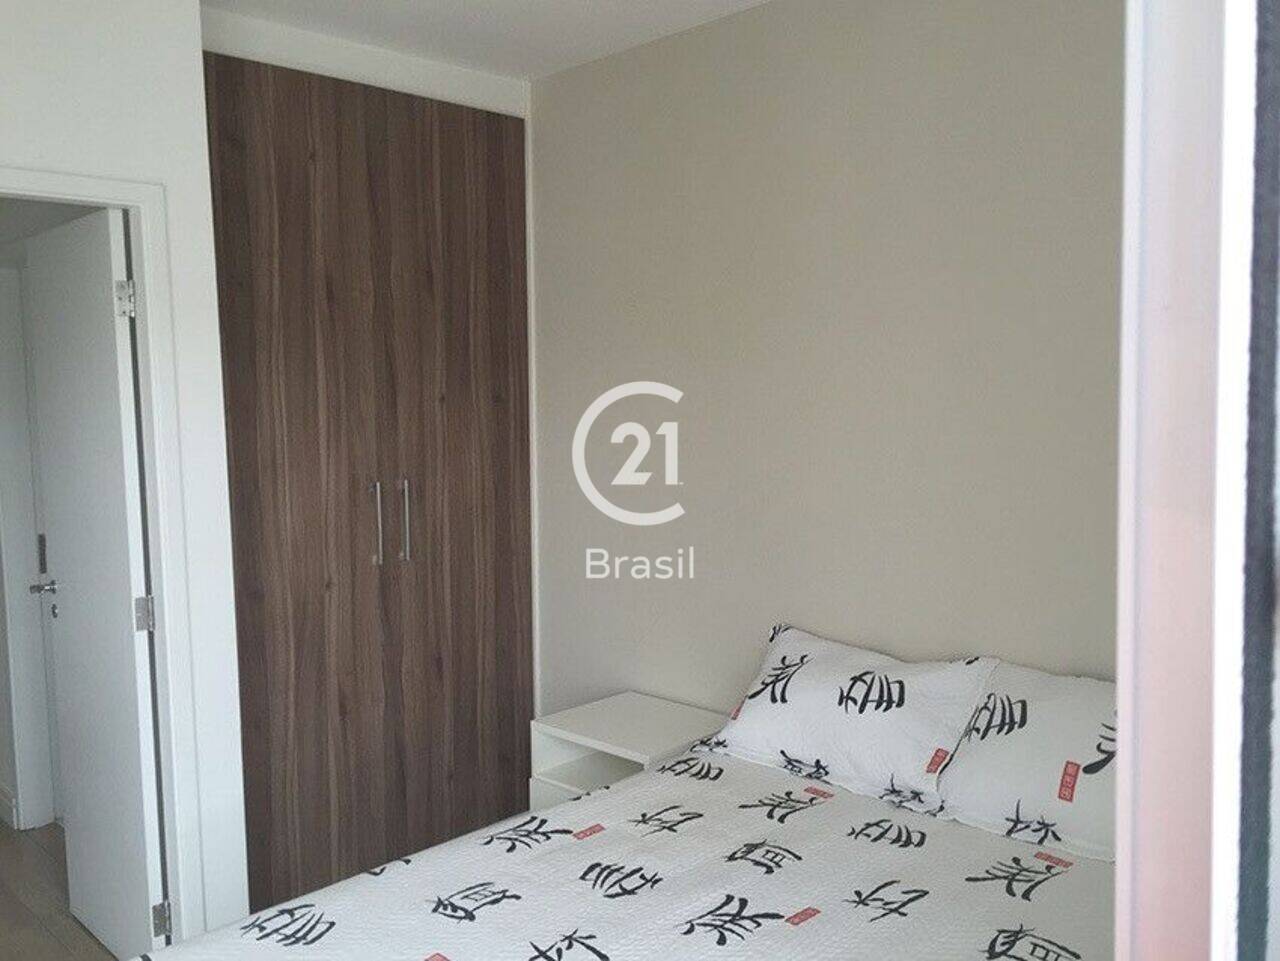 Apartamento duplex Paraíso, São Paulo - SP